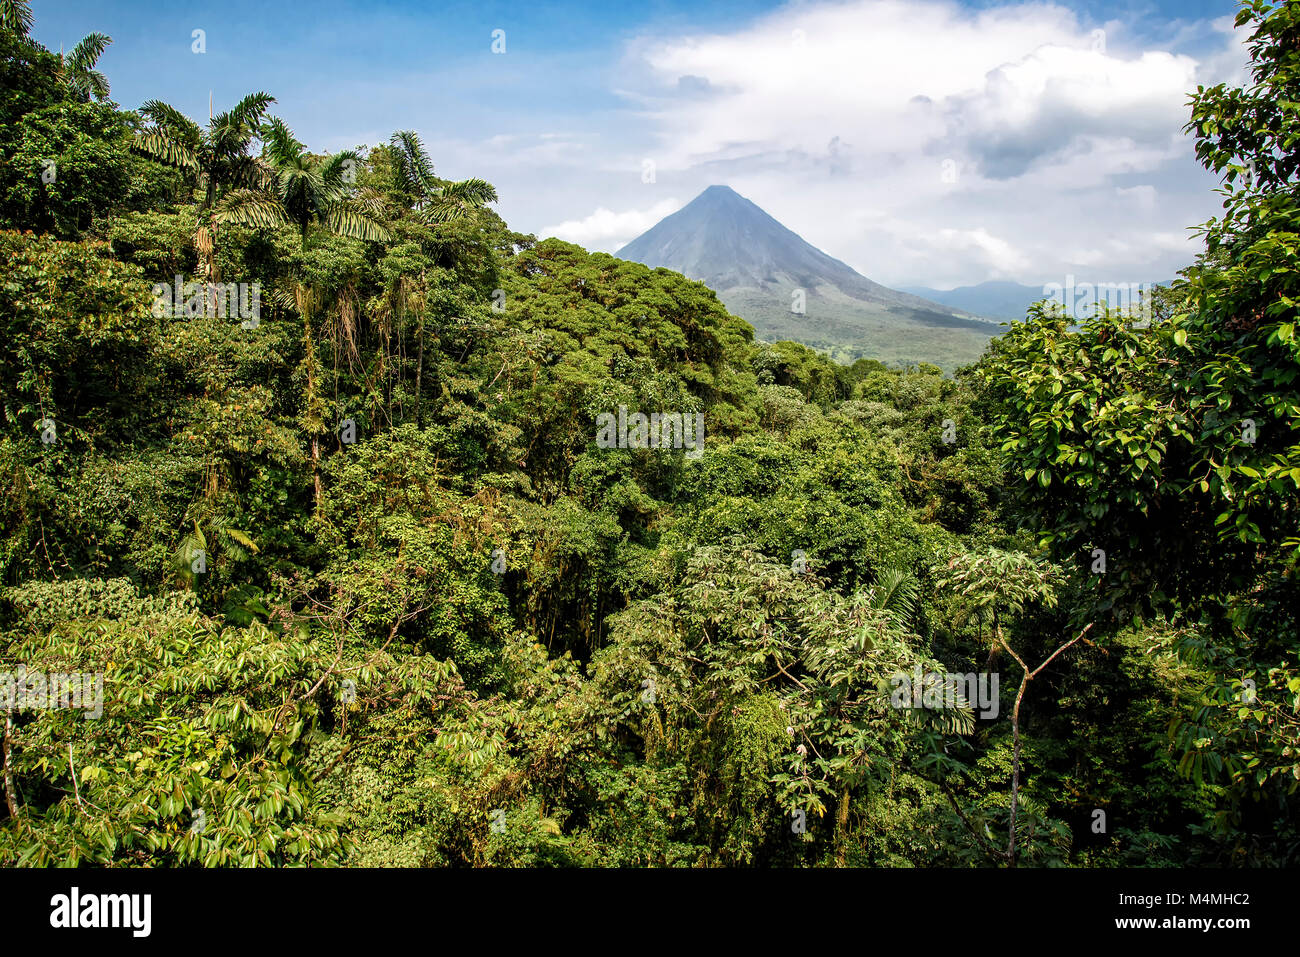 Volcano of Arenal in Costa Rica close to La Fortuna Stock Photo